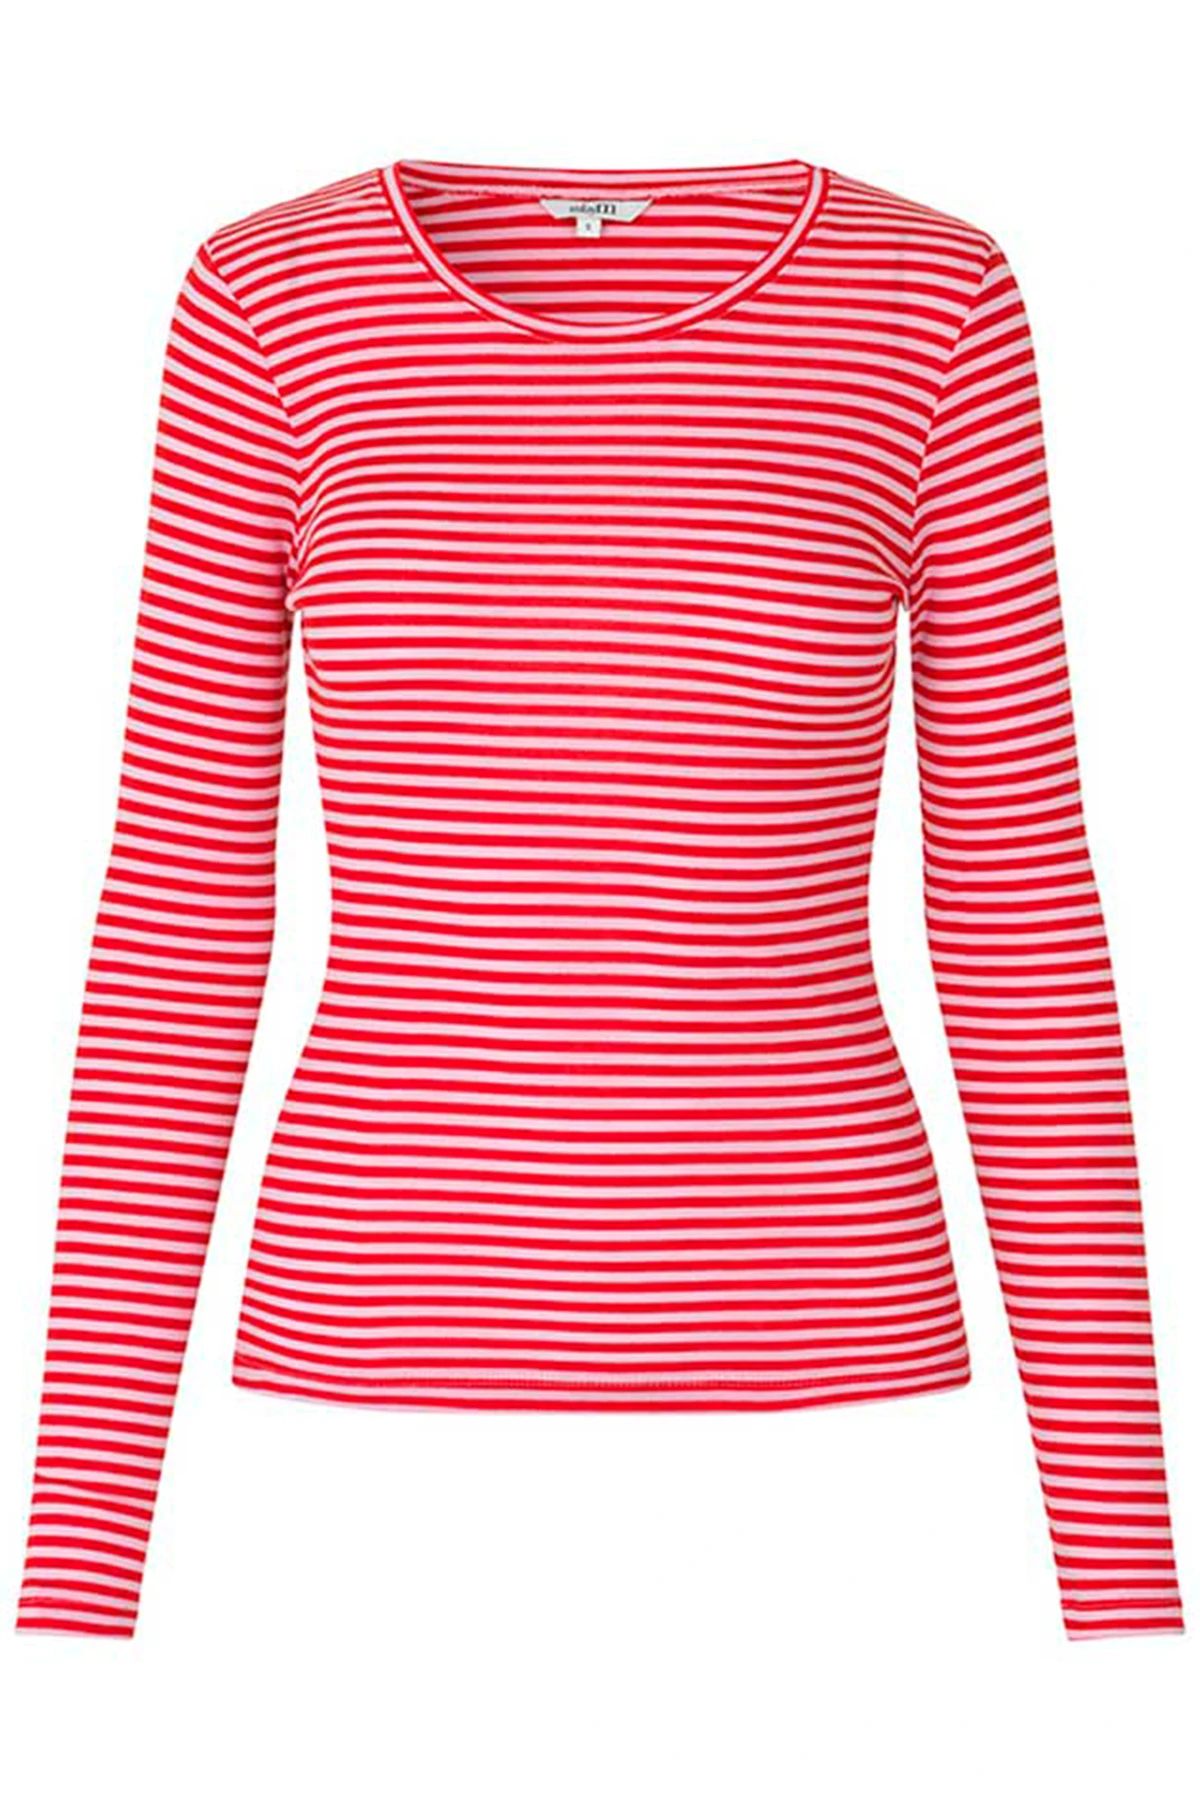 mbyM Lilita Gogreen Langærmet T-shirt, Goji Pink Stripe, L